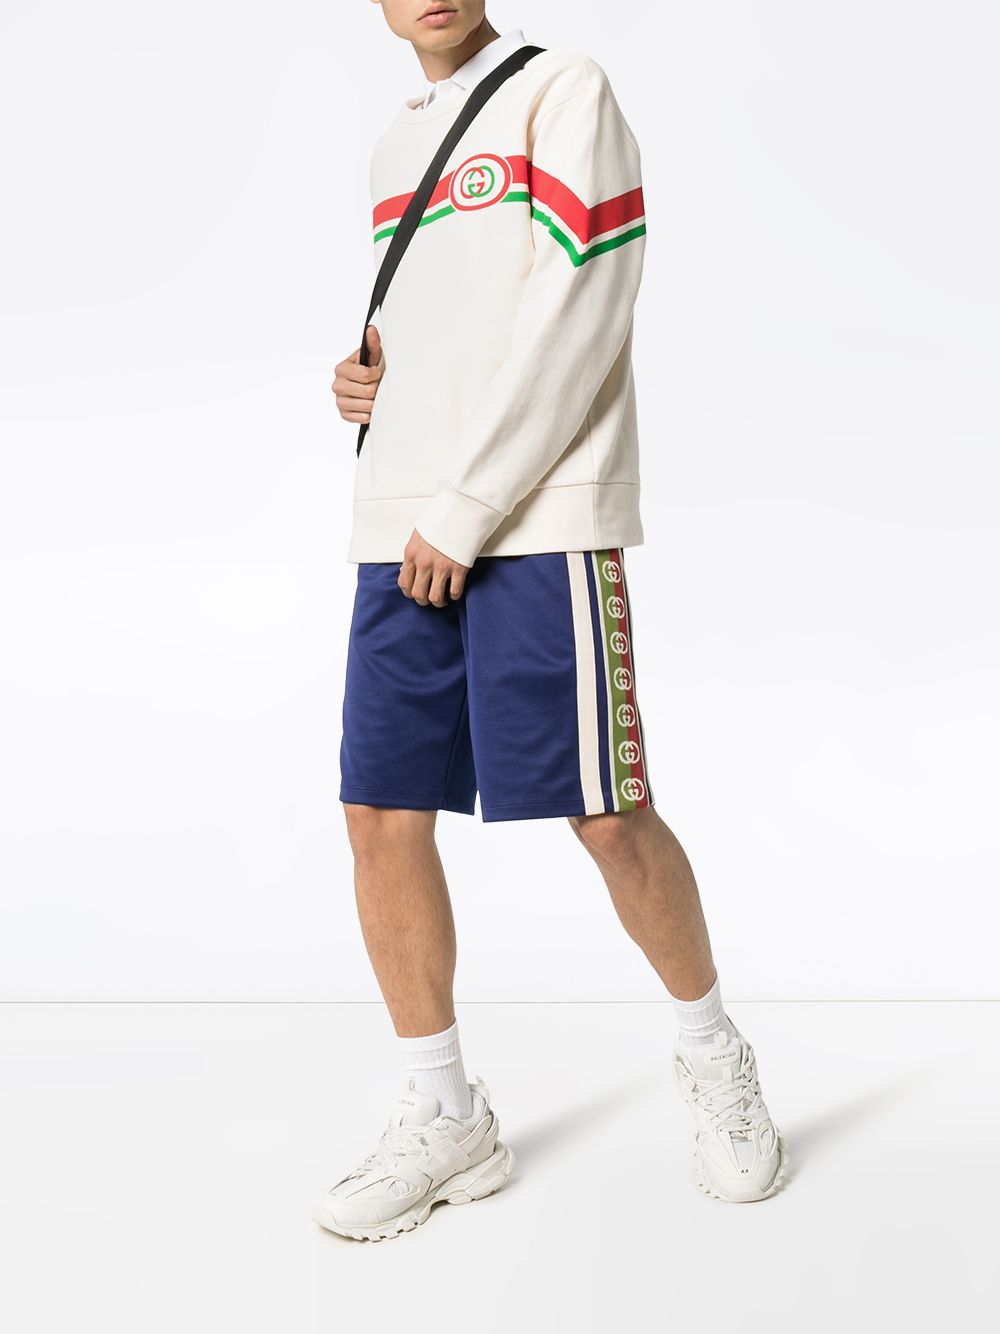 фото Gucci спортивные шорты с контрастными полосками и логотипом gg